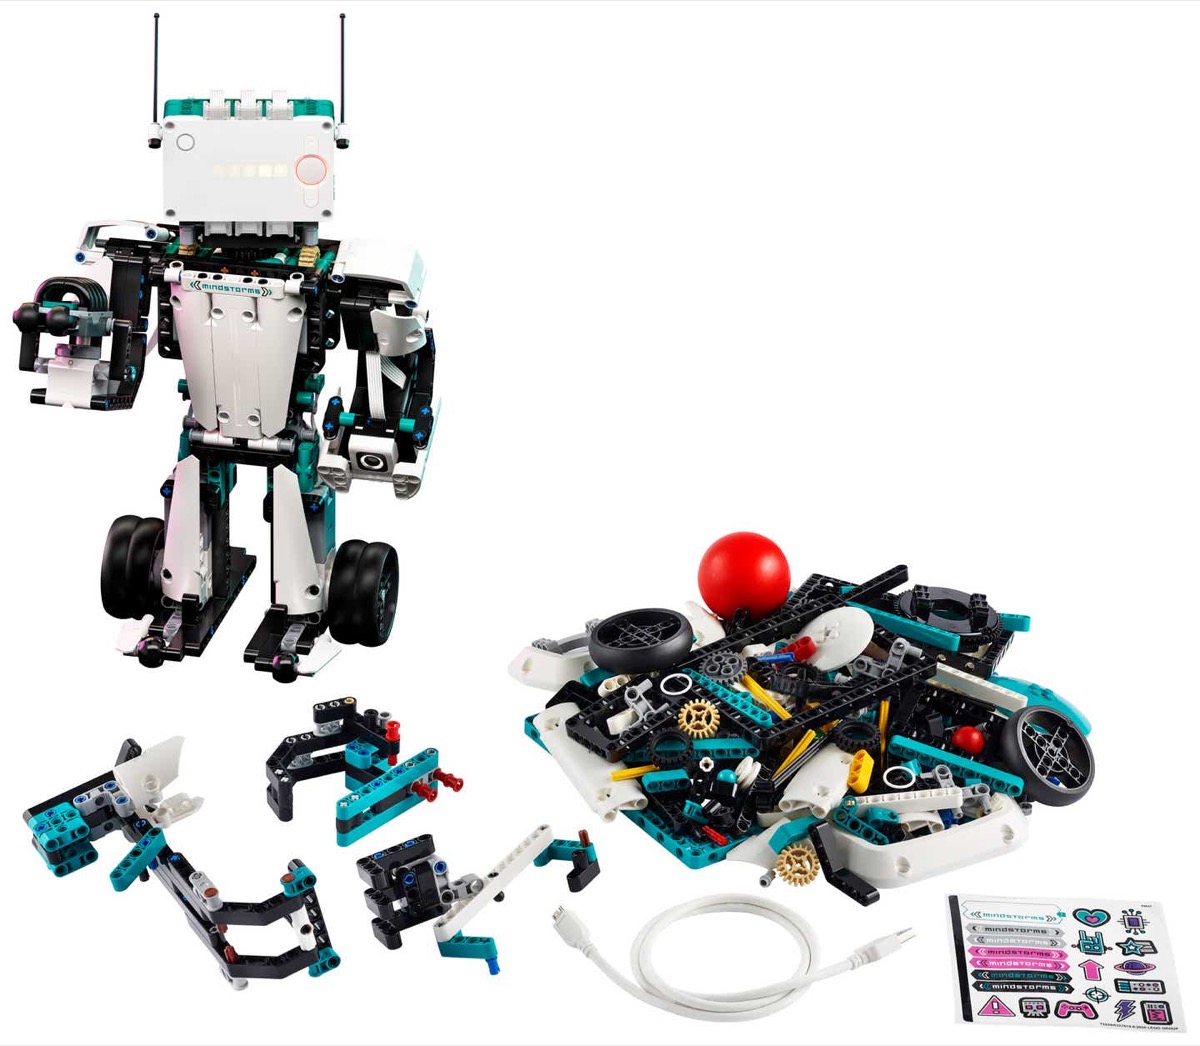 E’ in arrivo il set di mattoncini LEGO per costruire robot che si controllano con lo smartphone